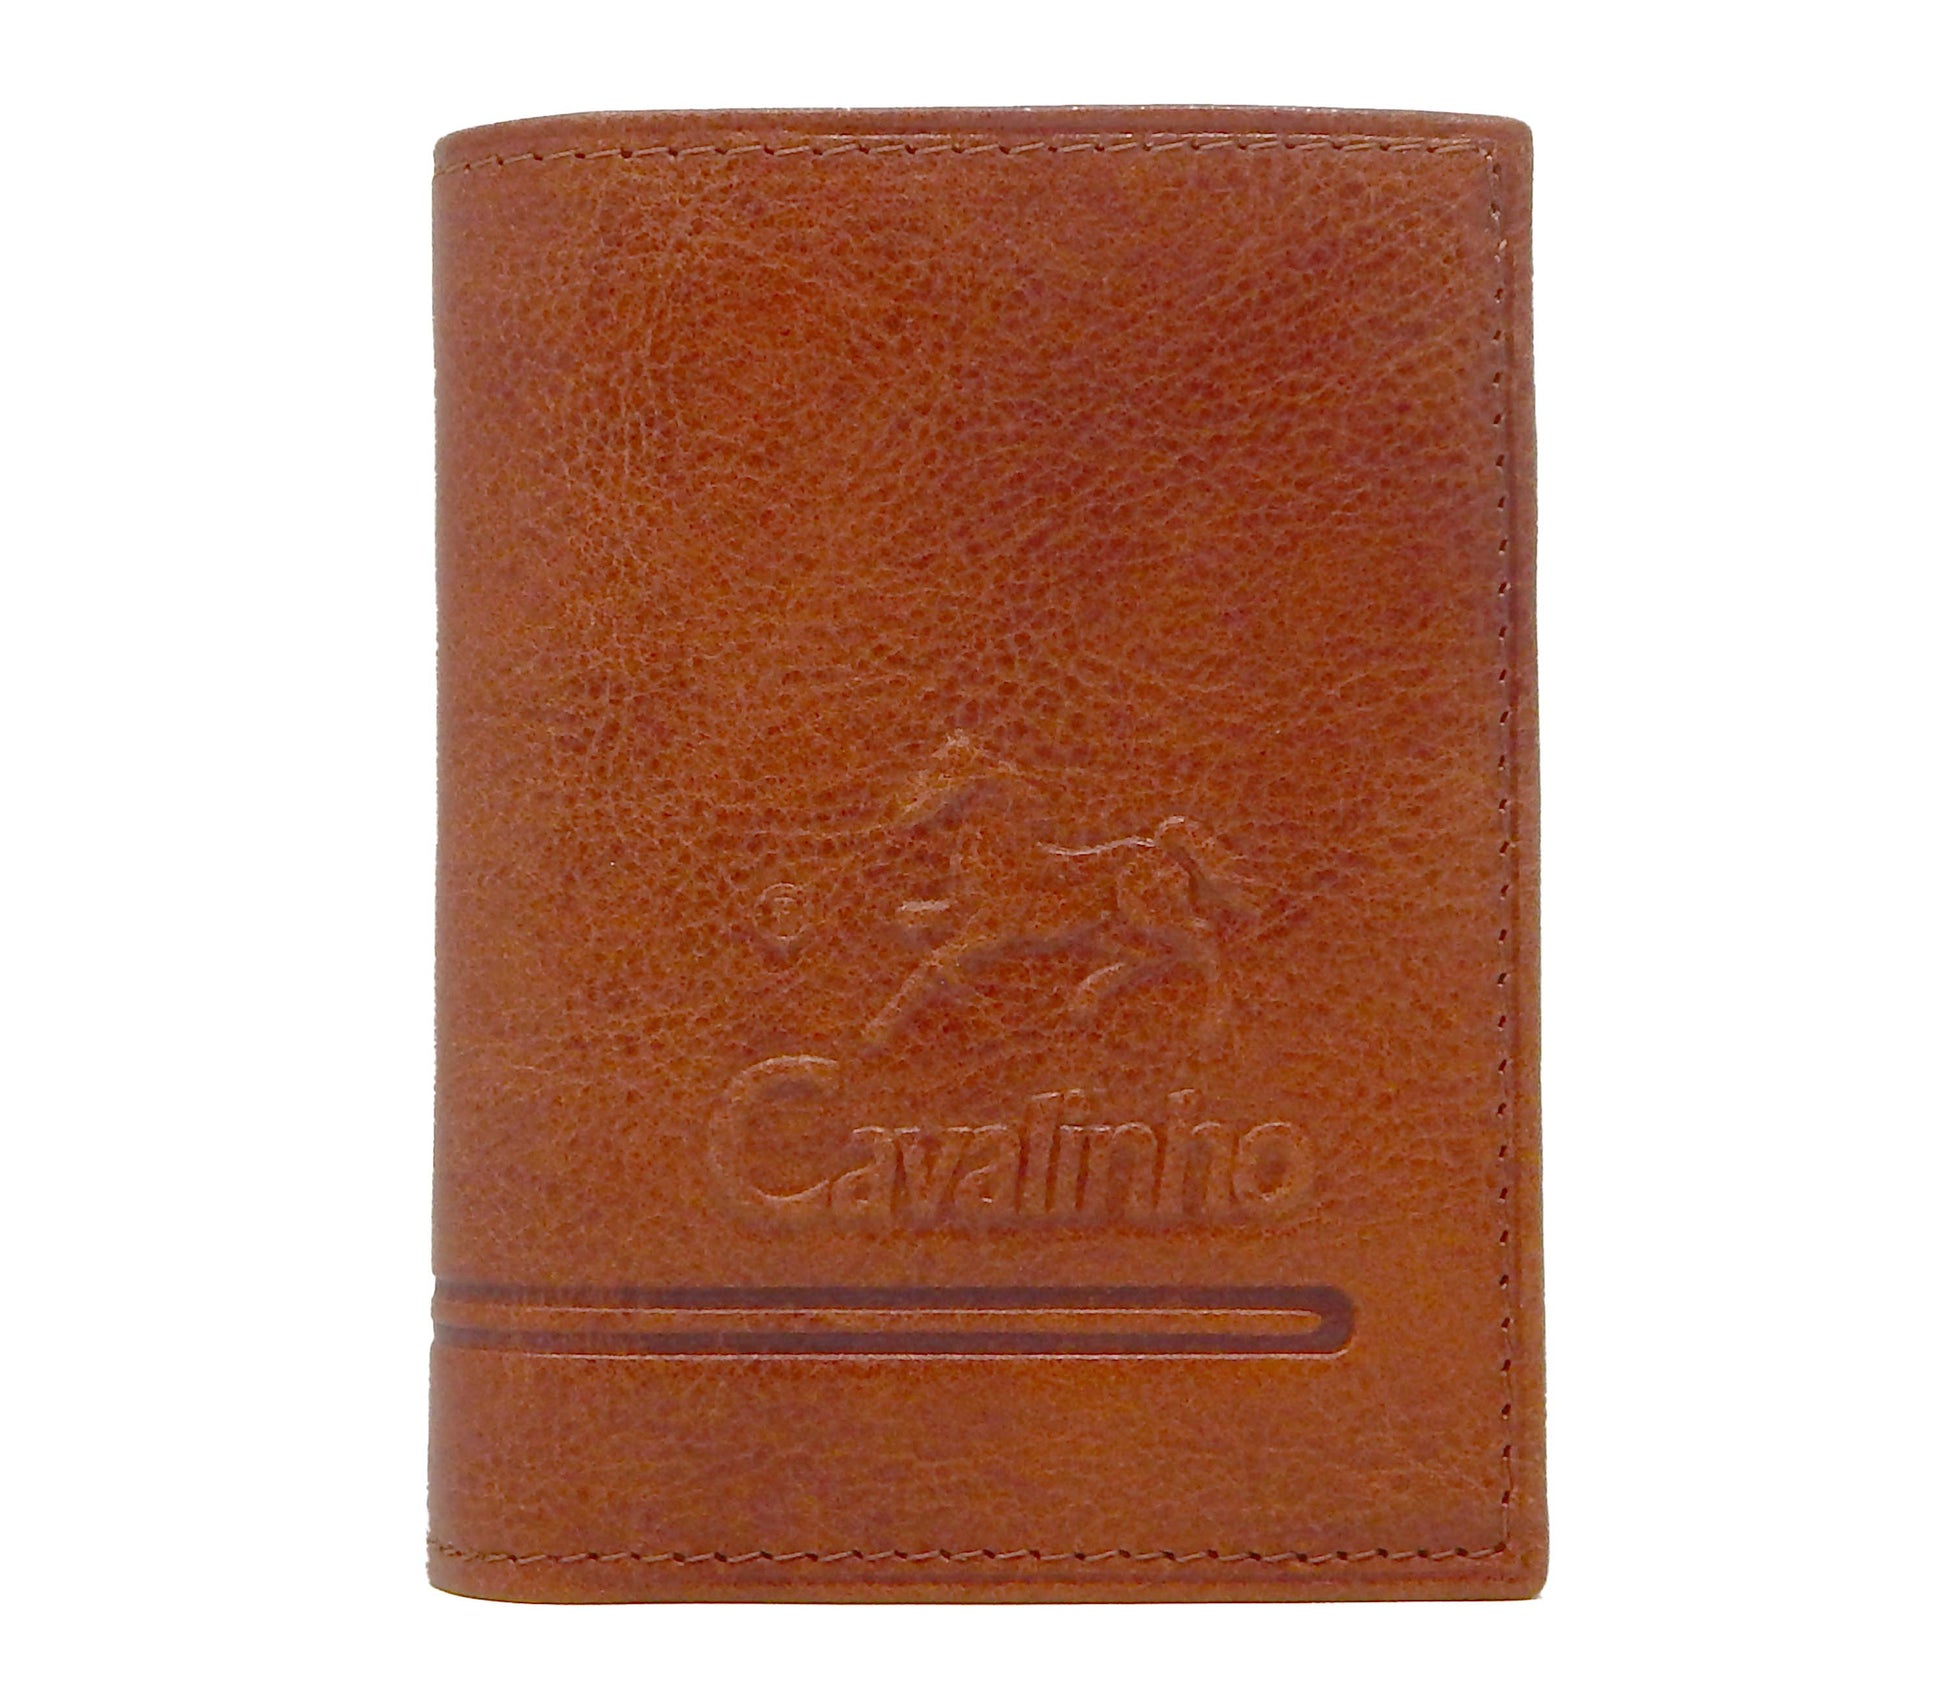 Cavalinho Men's Trifold Leather Wallet - SaddleBrown - 28160522.13.99_1